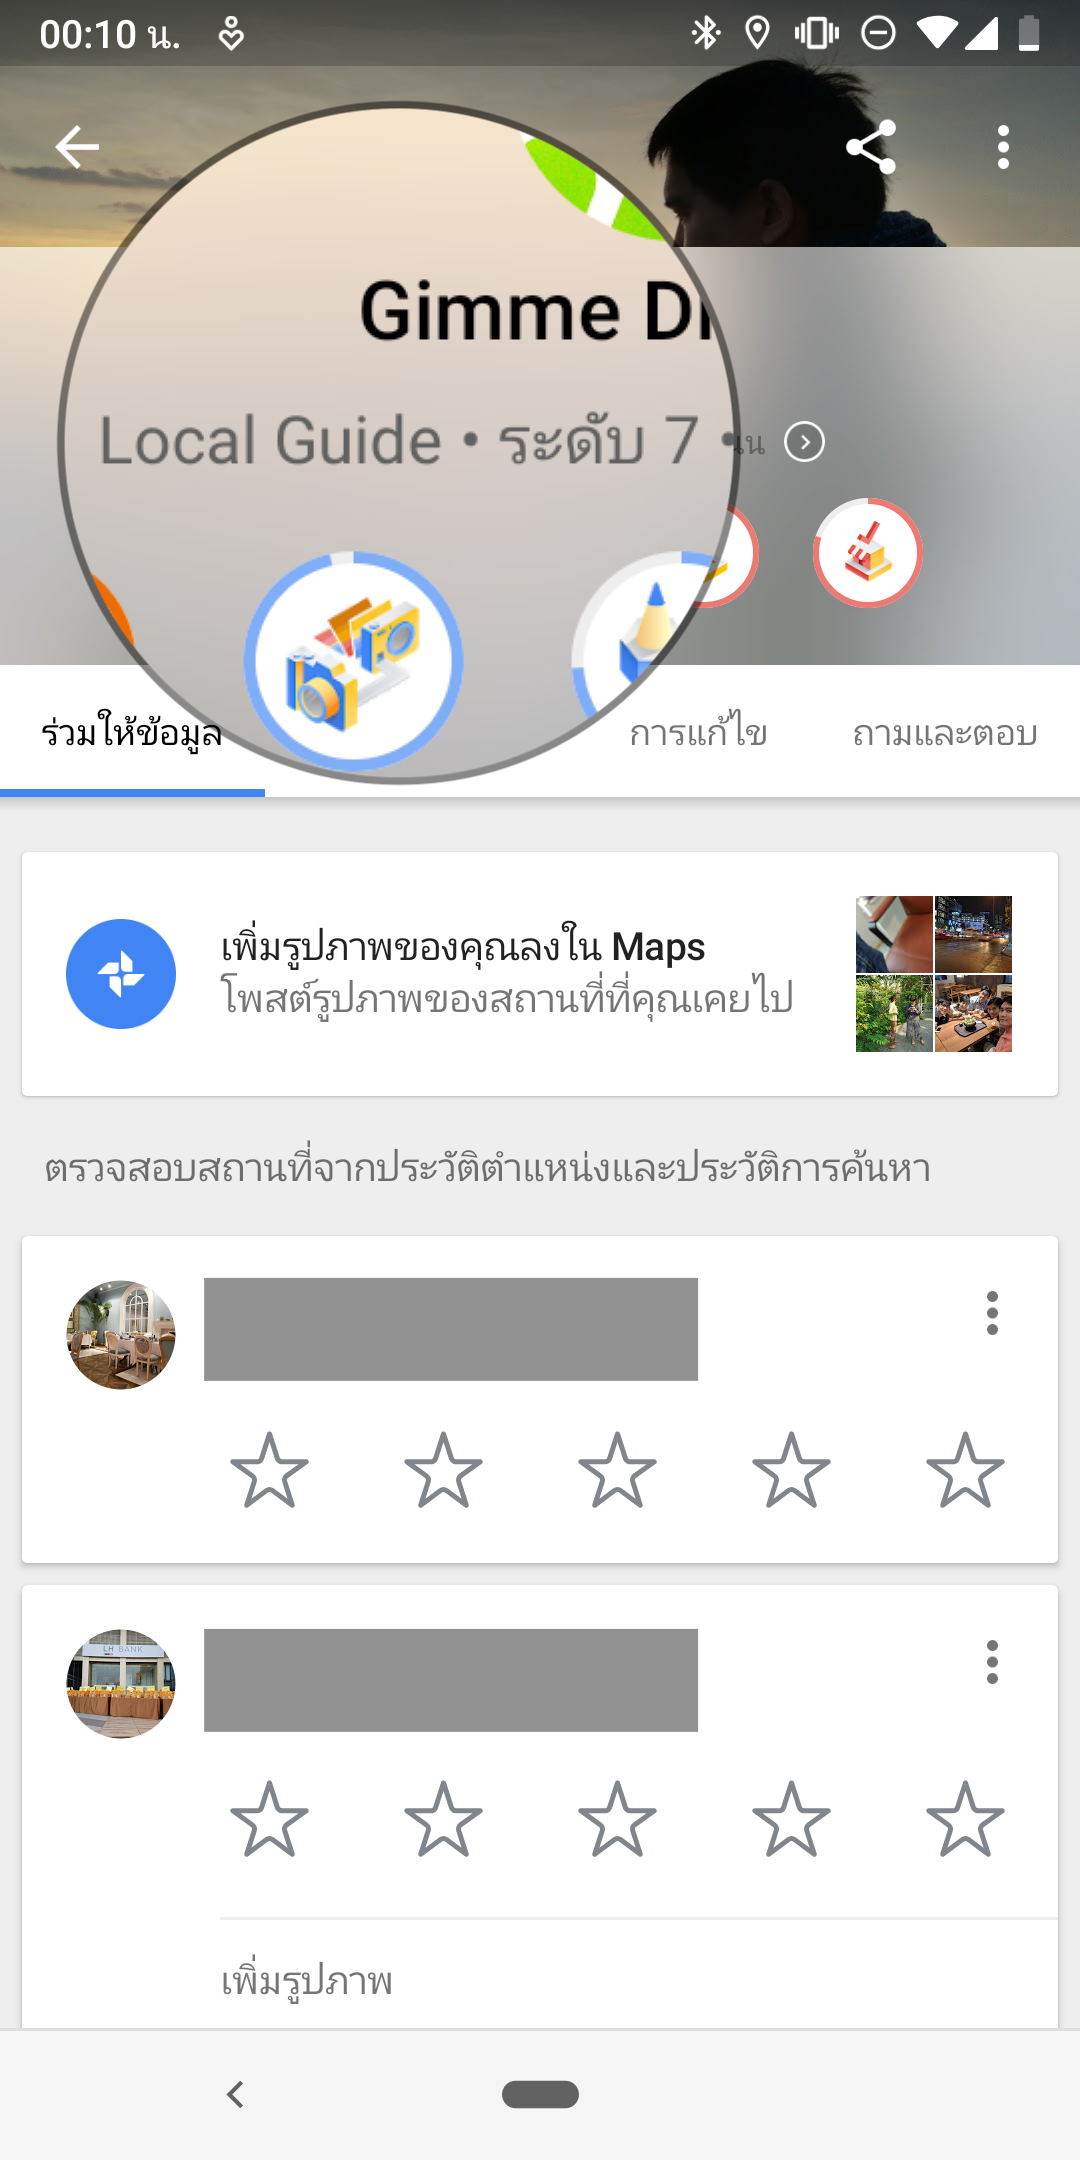 Google Maps AR แค่ยกมือถือขึ้นส่อง ก็มีศรชี้นำทางให้เห็นตรงหน้า เปิดให้ใช้แล้วในไทย